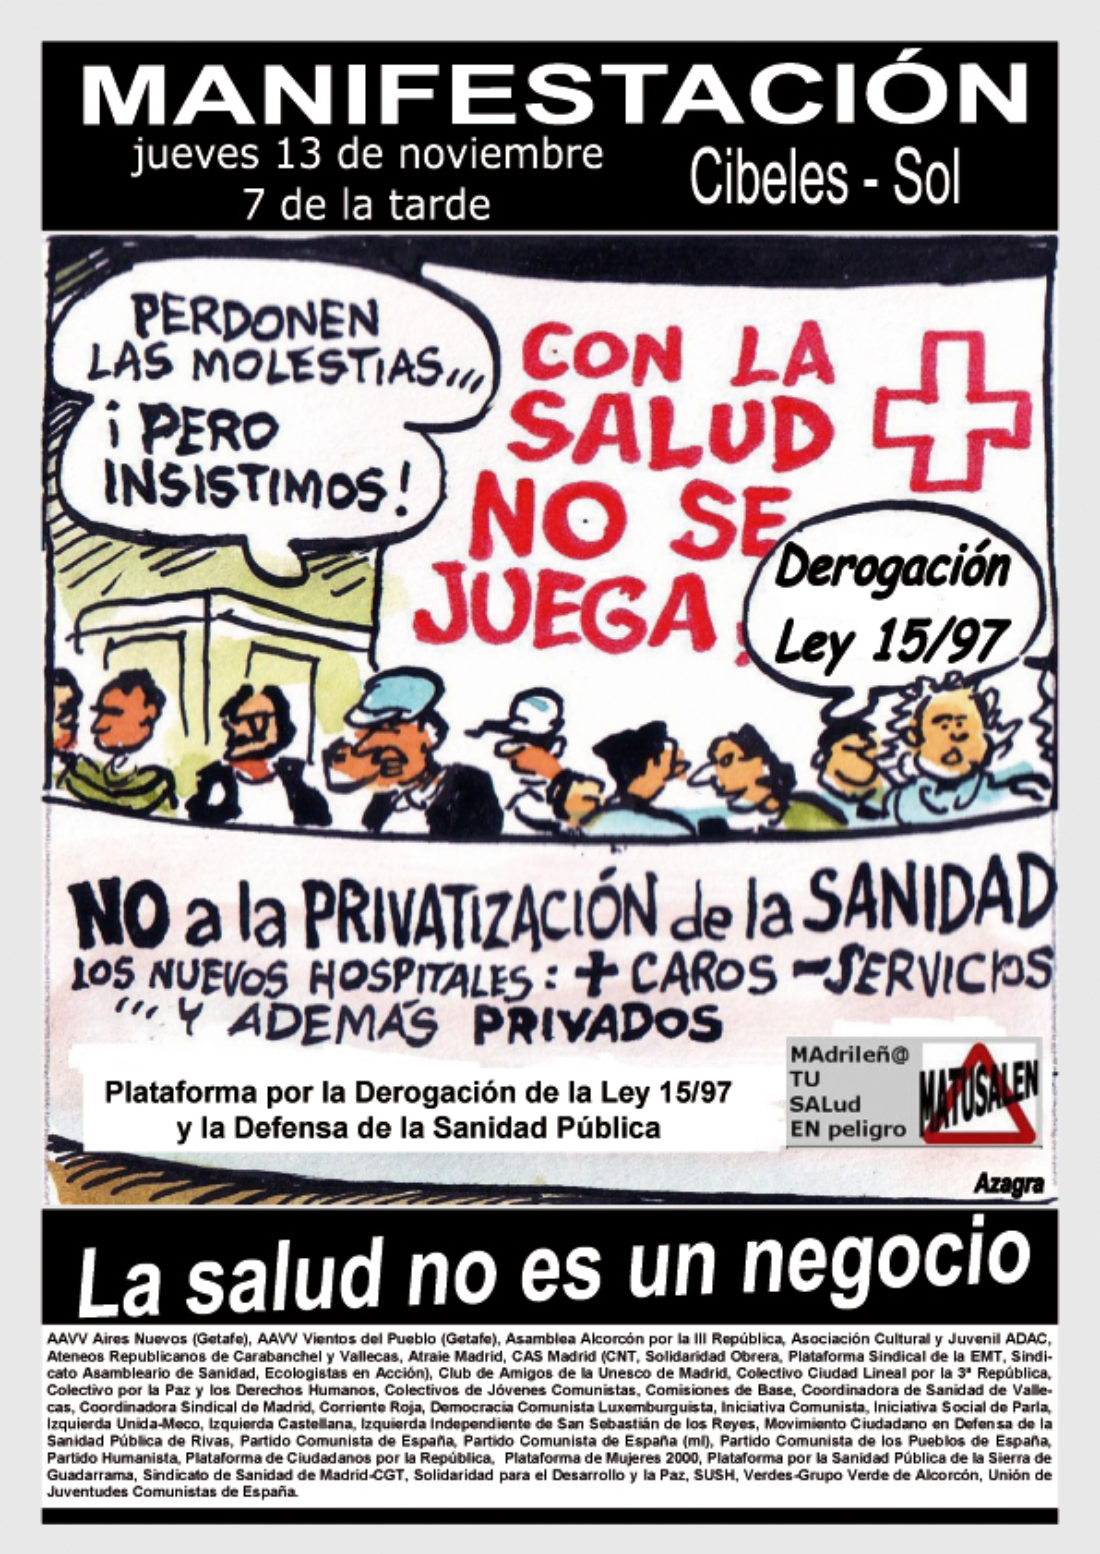 Madrid, 13 de noviembre : manifestación contra la privatización de la sanidad pública